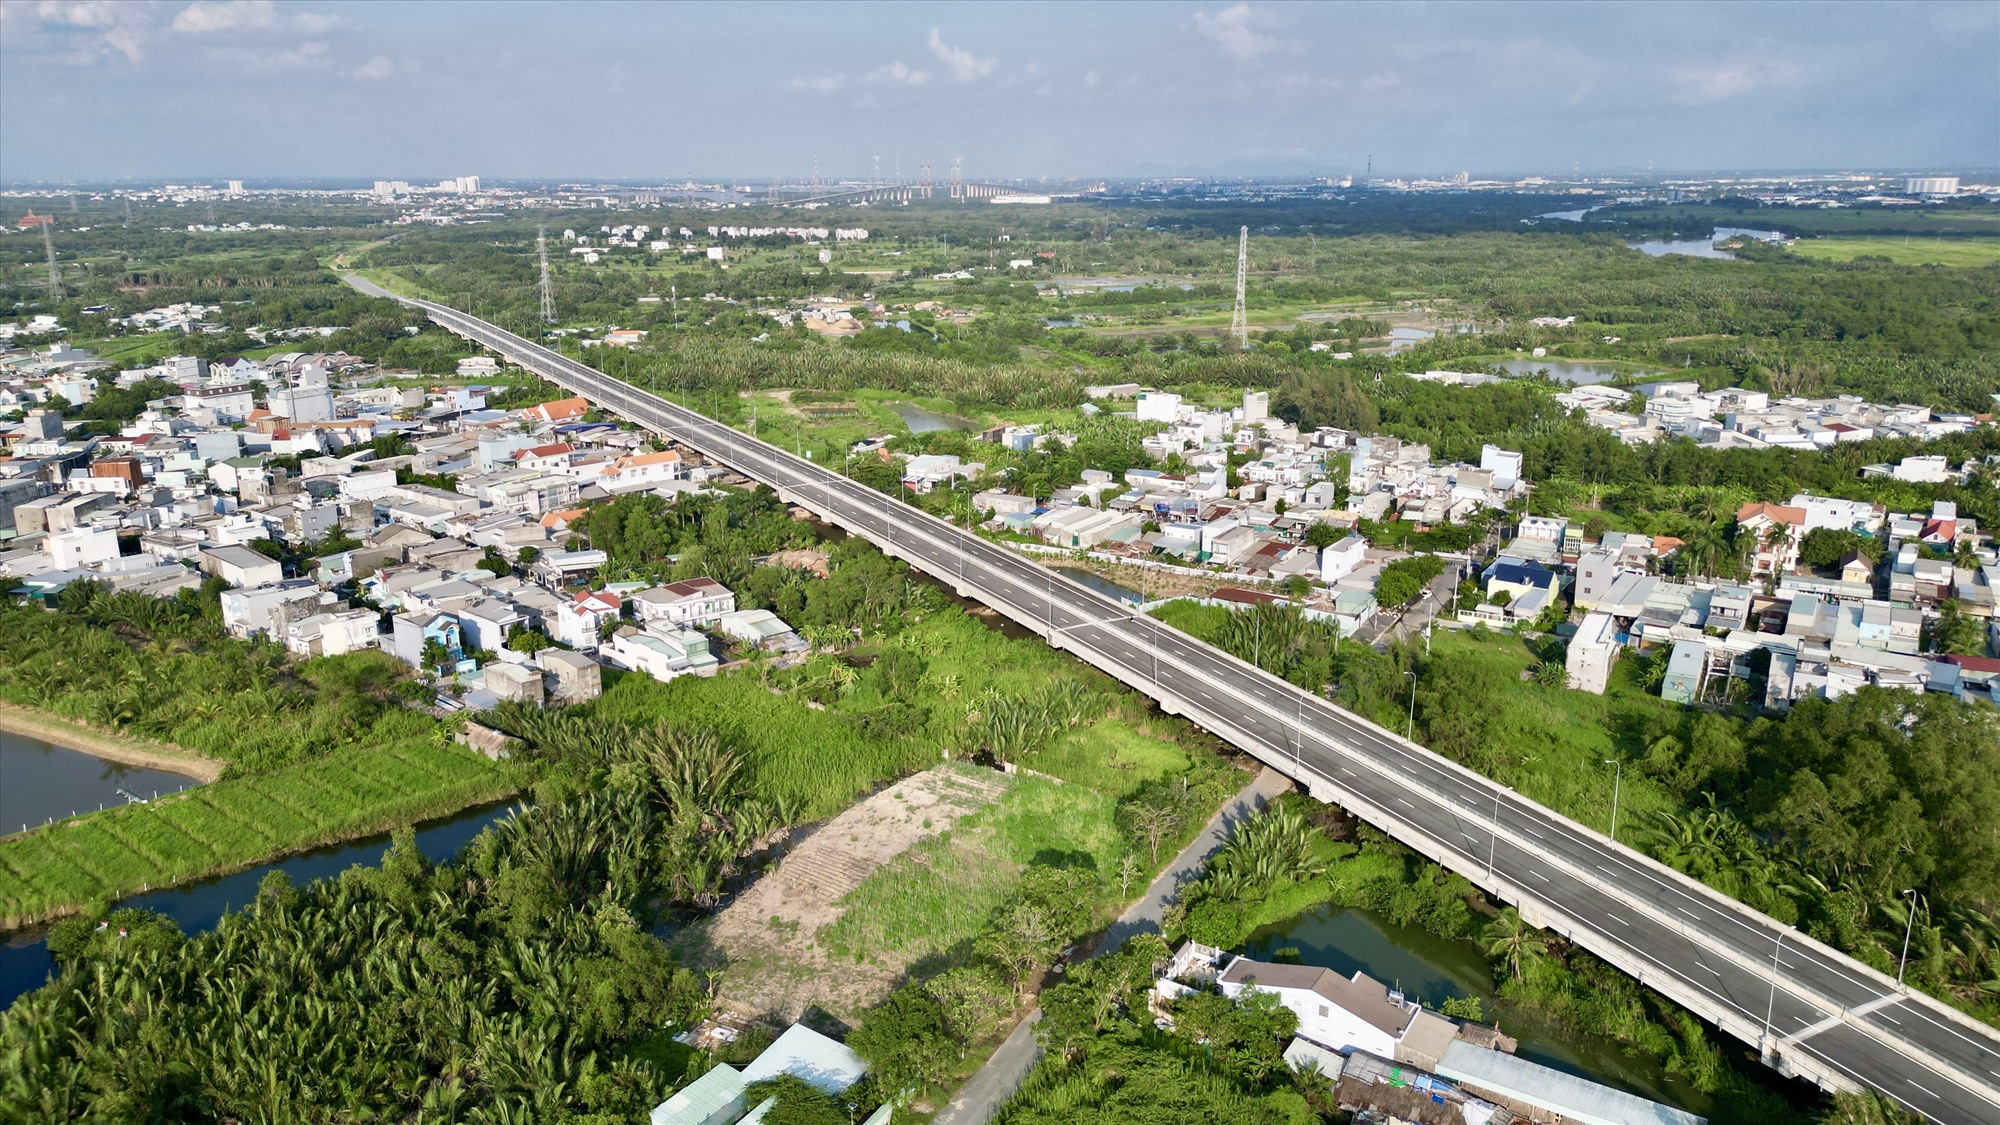 Cao tốc Bến Lức - Long Thành đoạn qua địa phận TPHCM dài gần hơn 24 km, trải dài trên 3 huyện gồm Bình Chánh, Nhà Bè và Cần Giờ. Trong đó, đoạn qua huyện Nhà Bè dài gần 5 km. Sau 9 năm xây dựng, nhiều km cao tốc qua địa phương này đã cơ bản hoàn thiện.